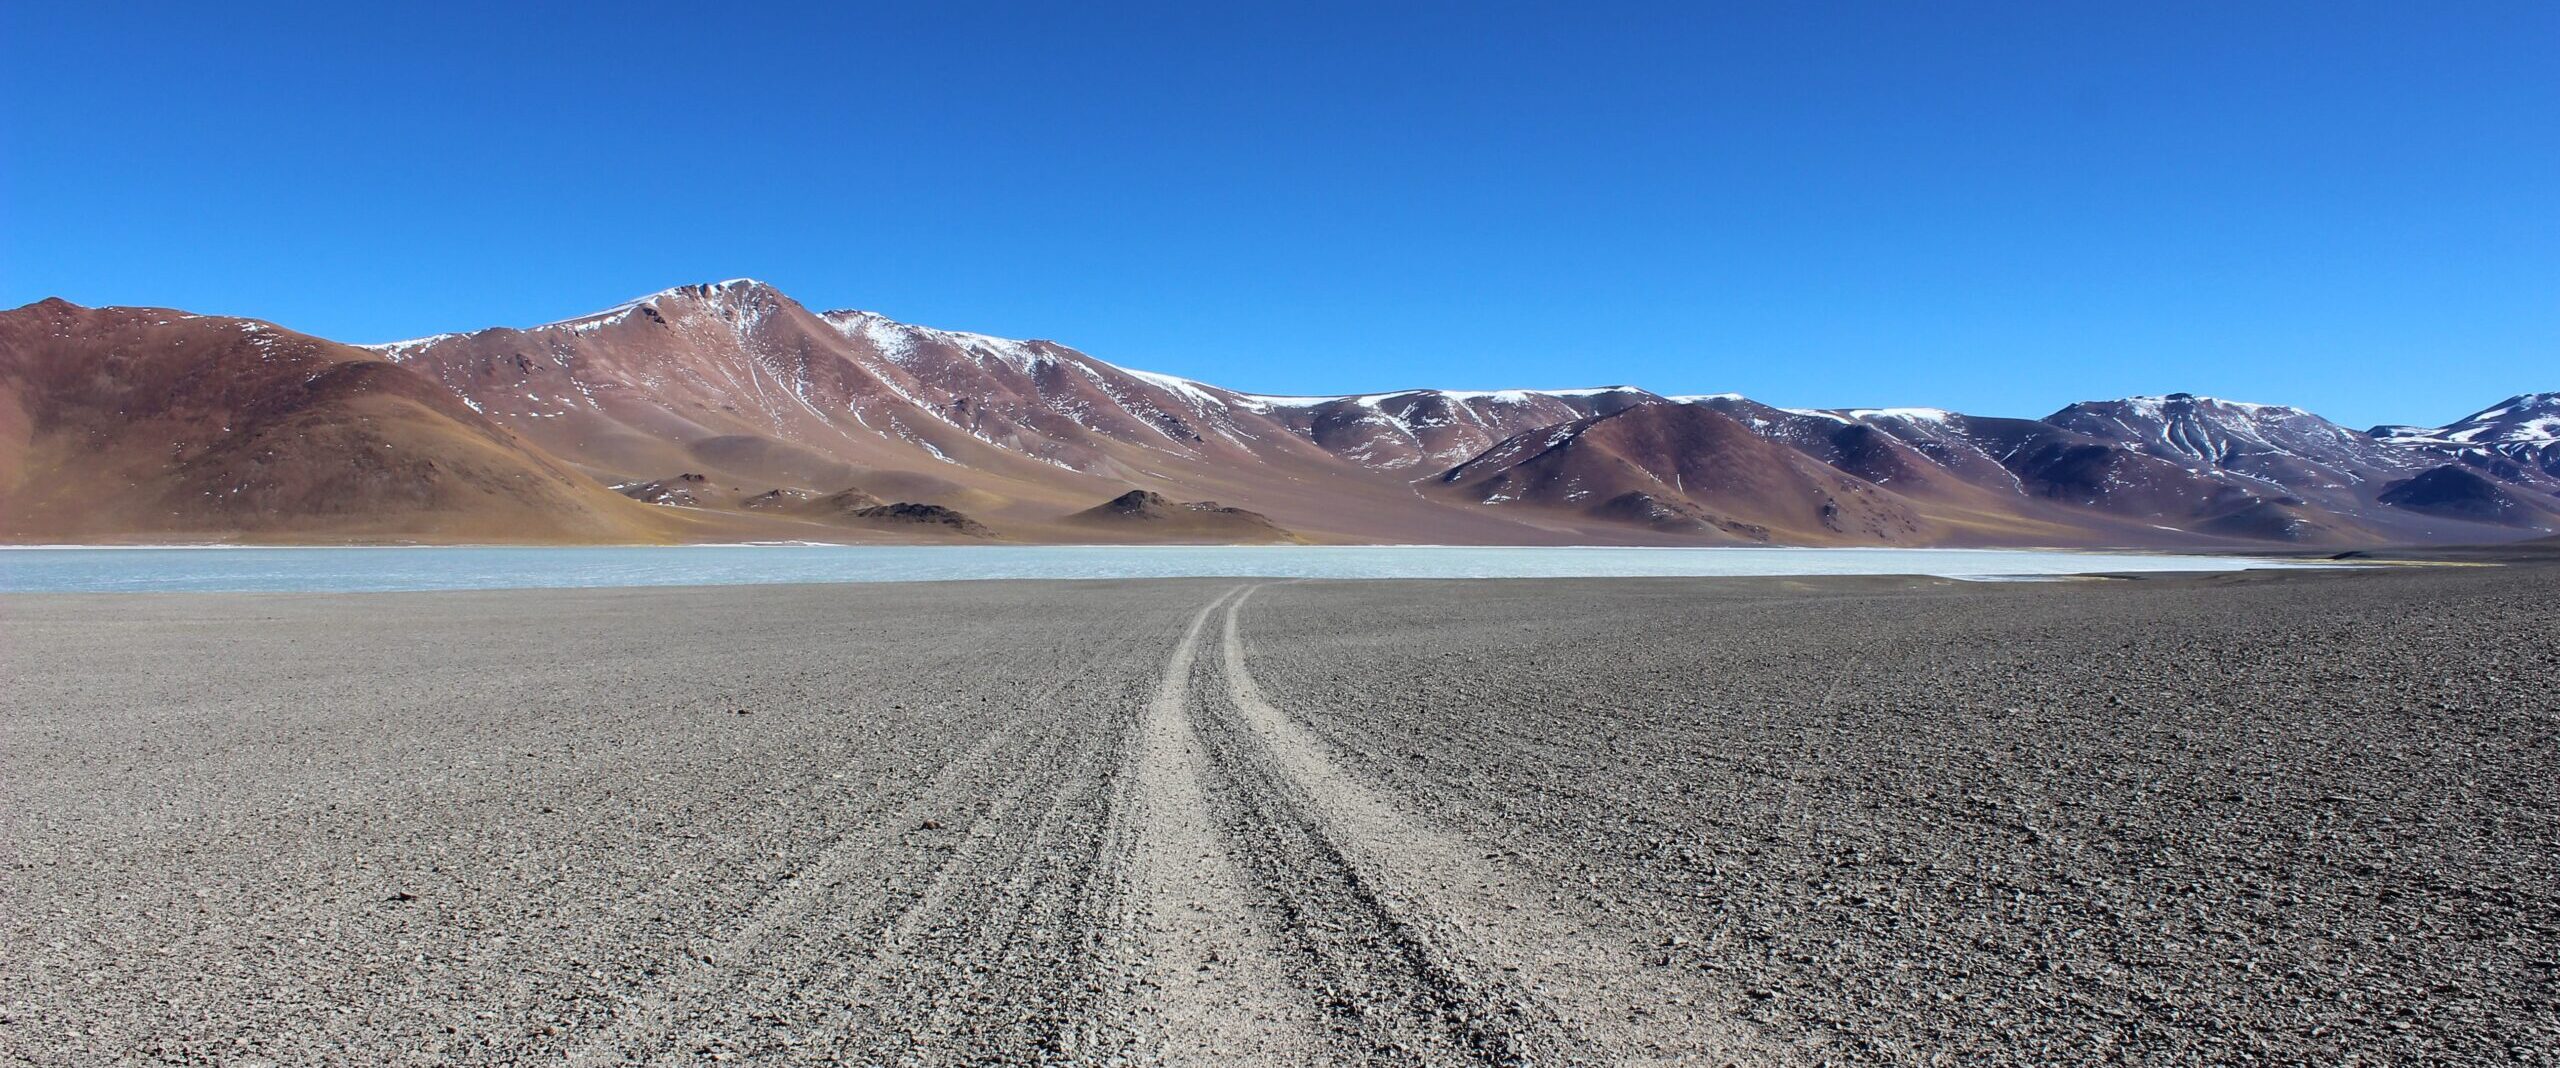 21 – Argentinischer Altiplano – Puna